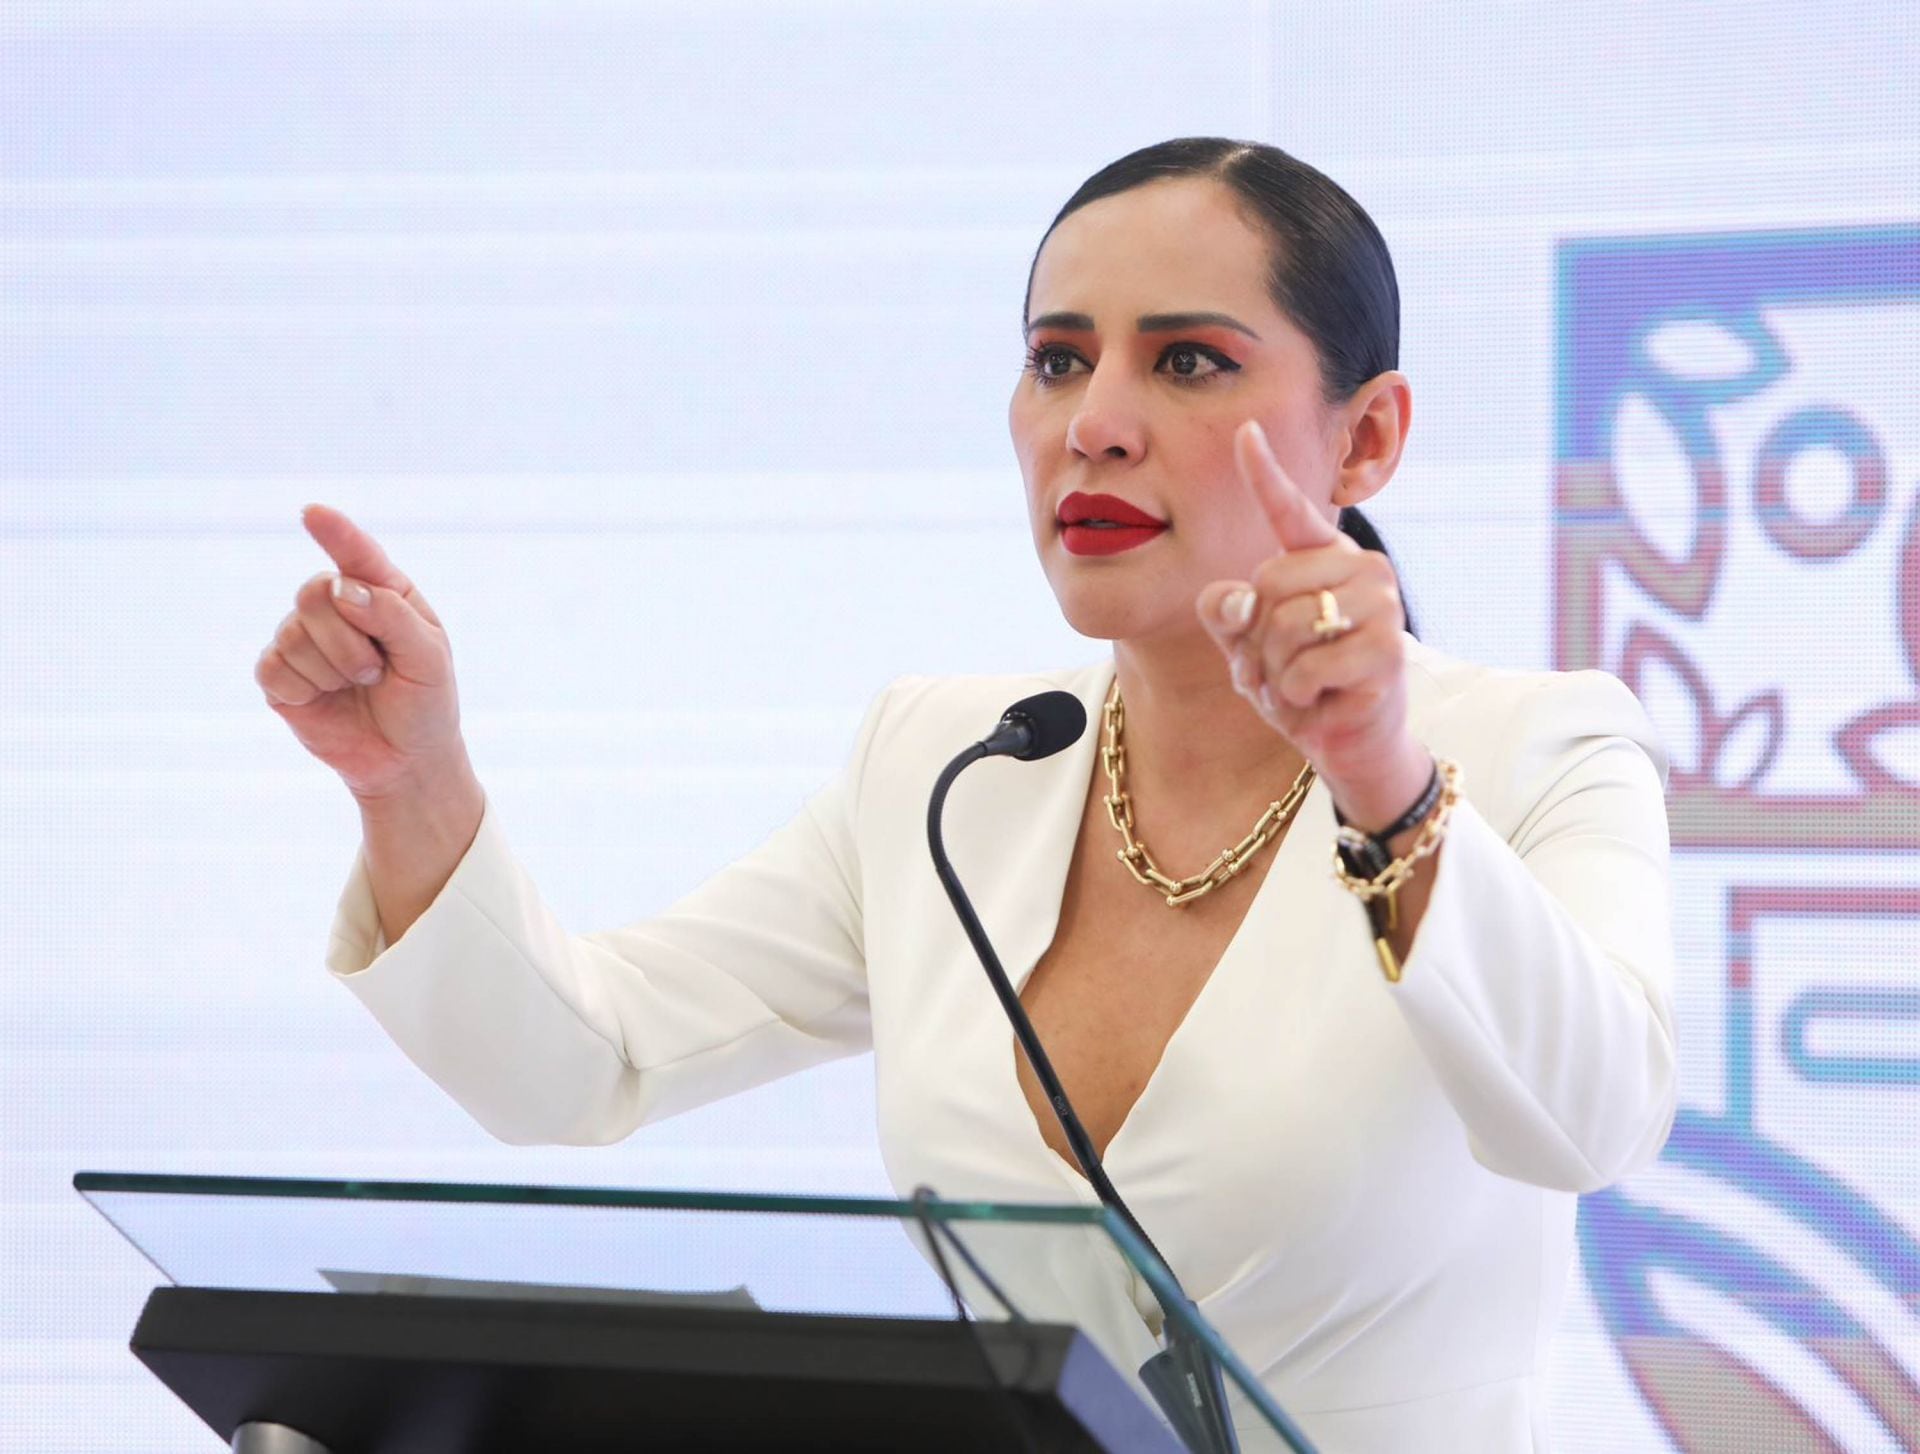 La fortuna y lujos de Sandra Cuevas: Este fue su sueldo de alcaldesa en Cuauhtémoc y su patrimonio